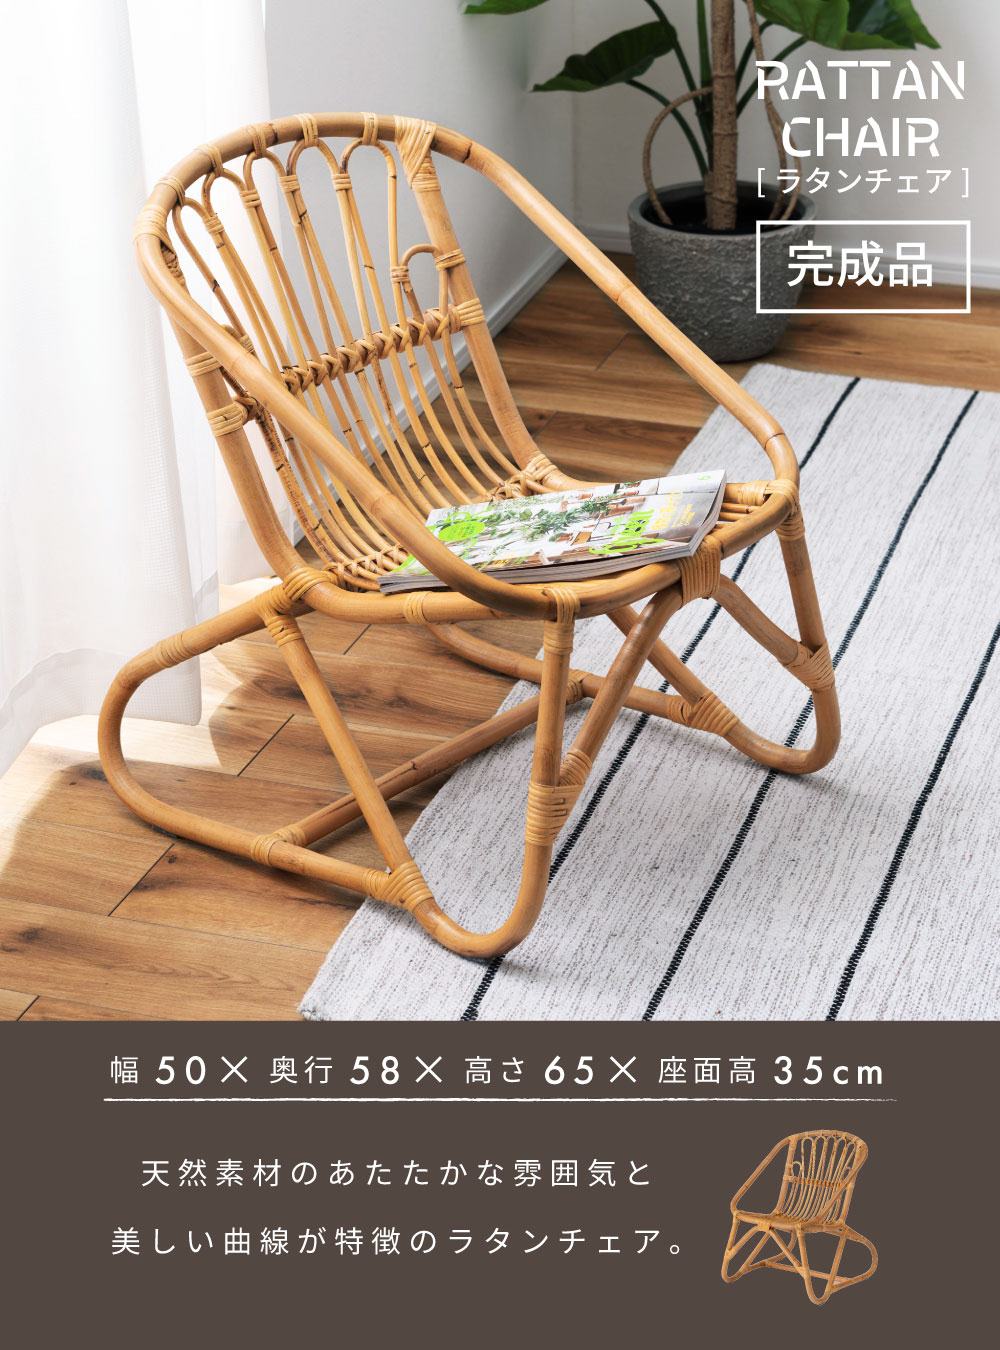 ラタンチェア チェア 椅子 ラタン 1人掛け ナチュラル シンプル アジアン 籐 天然素材 完成品